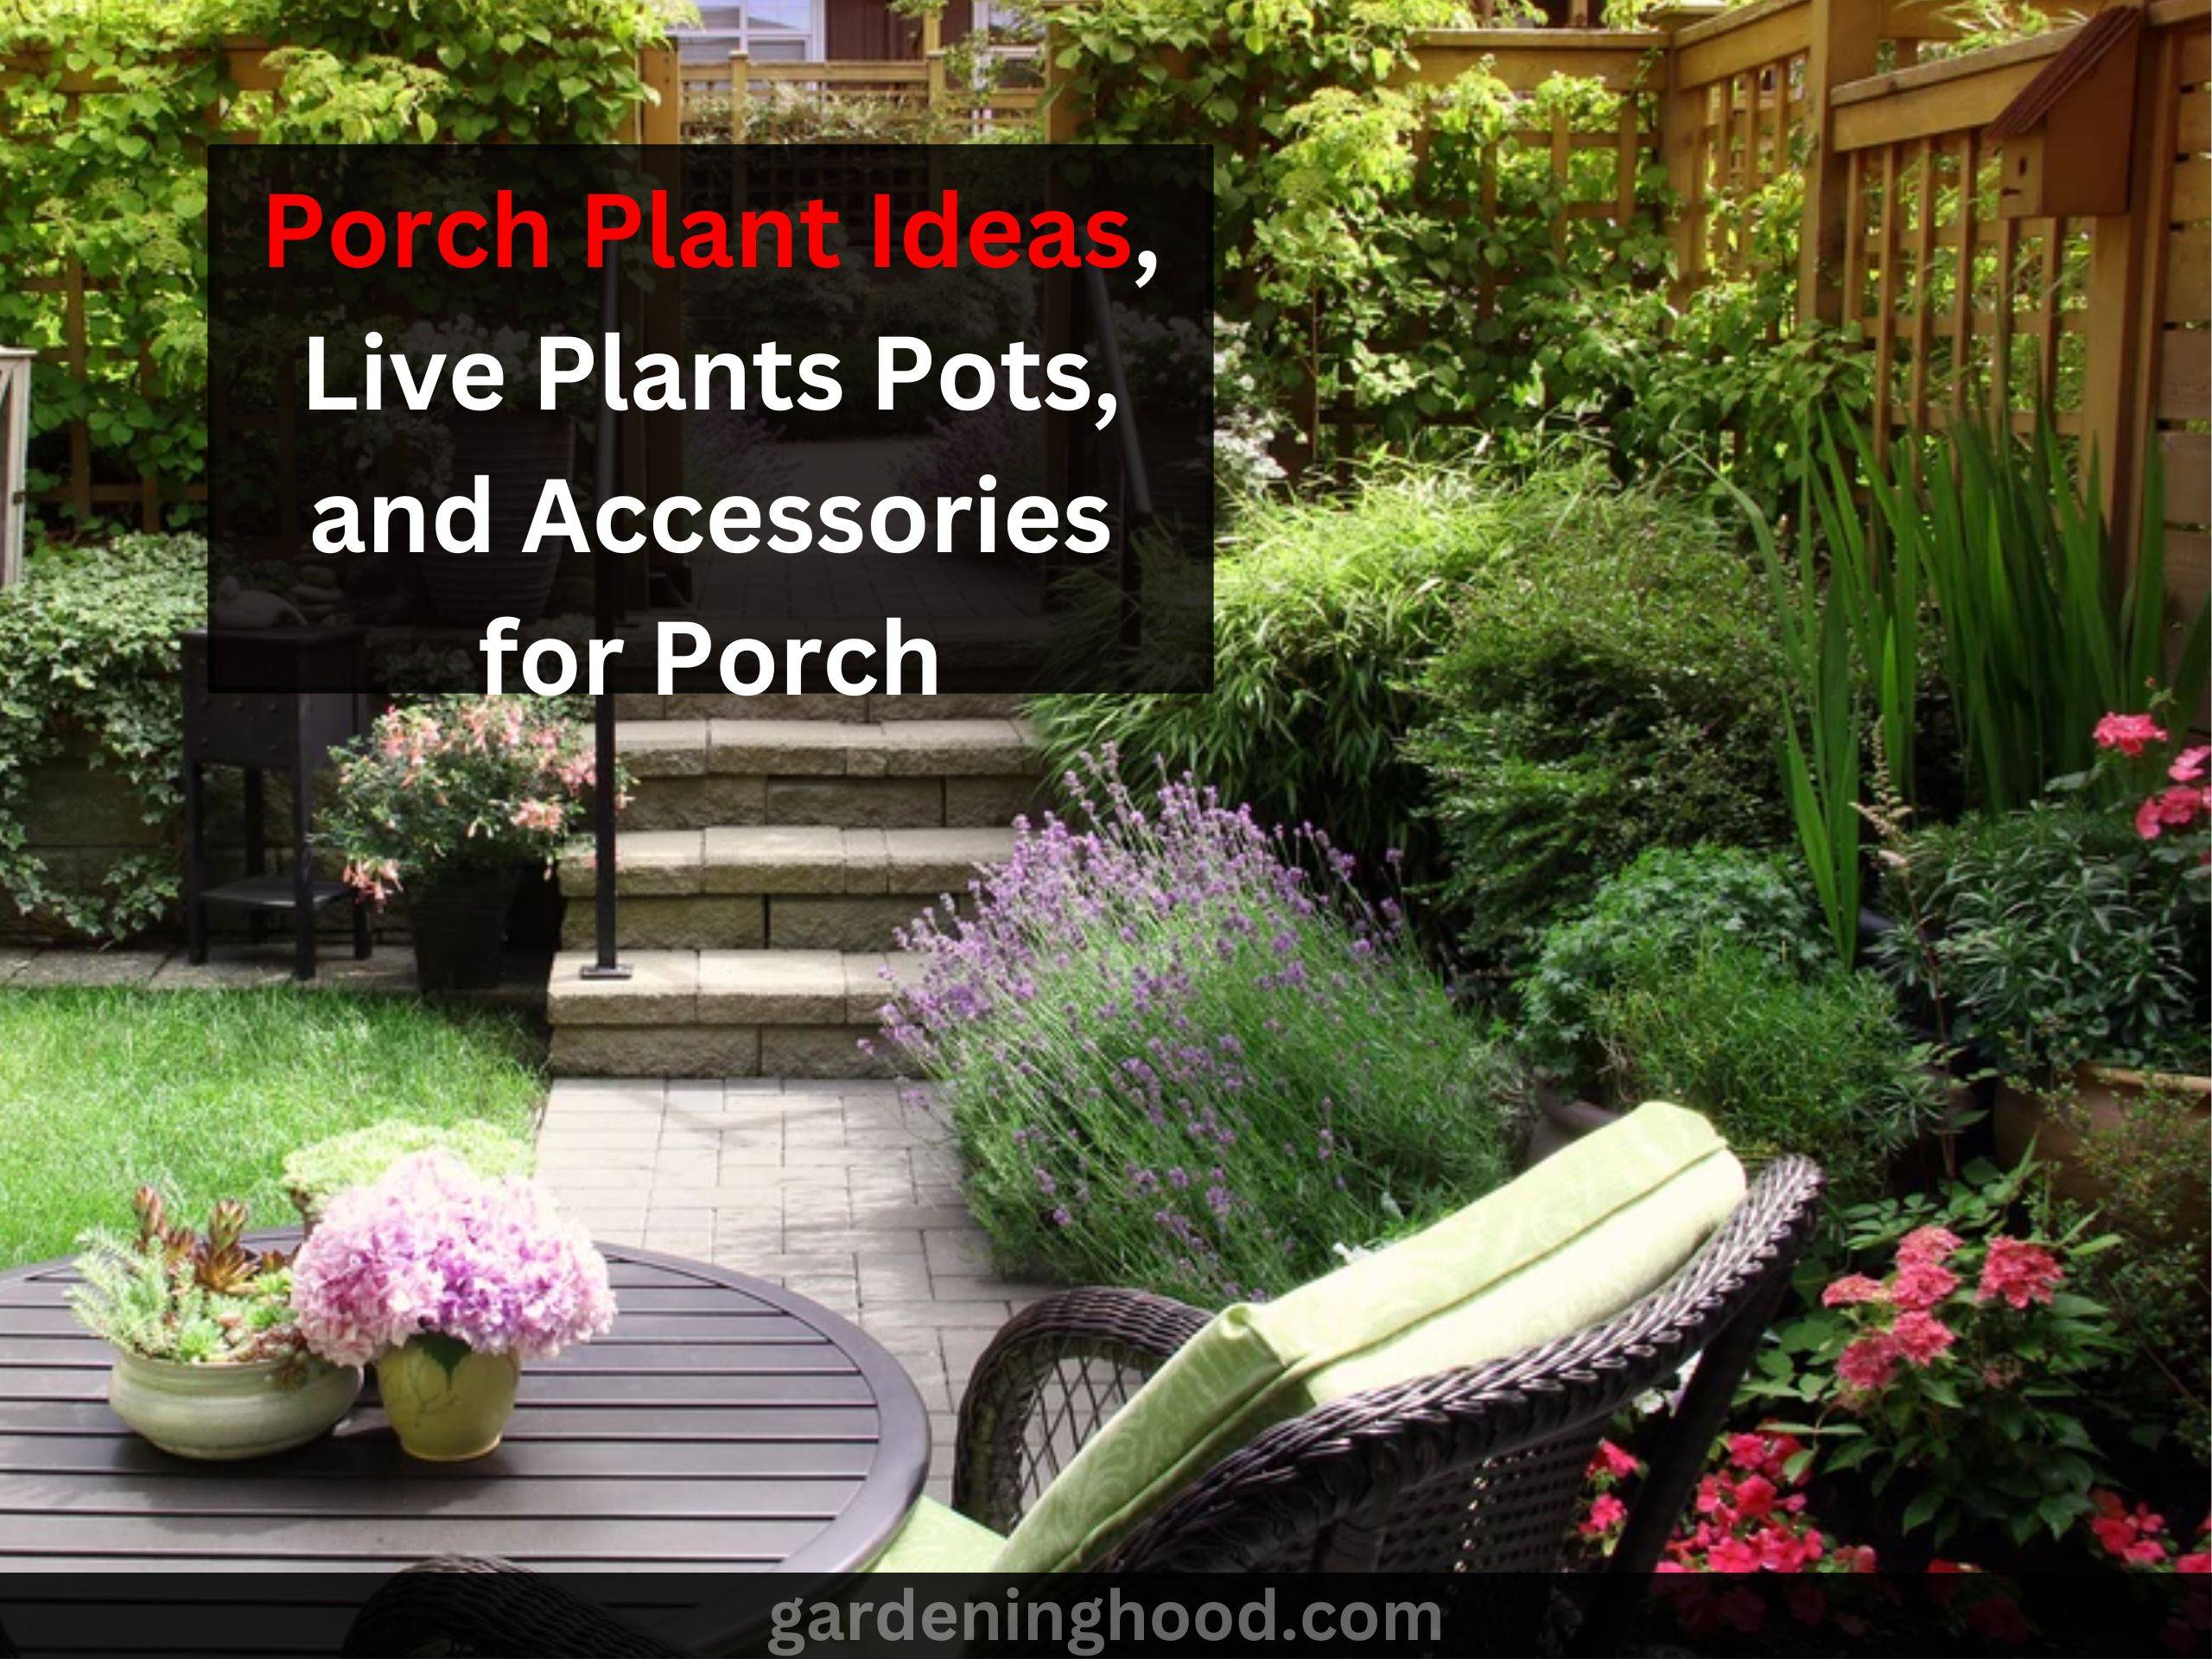 Porch Plant Ideas, Live Plants Pots, and Accessories for Porch